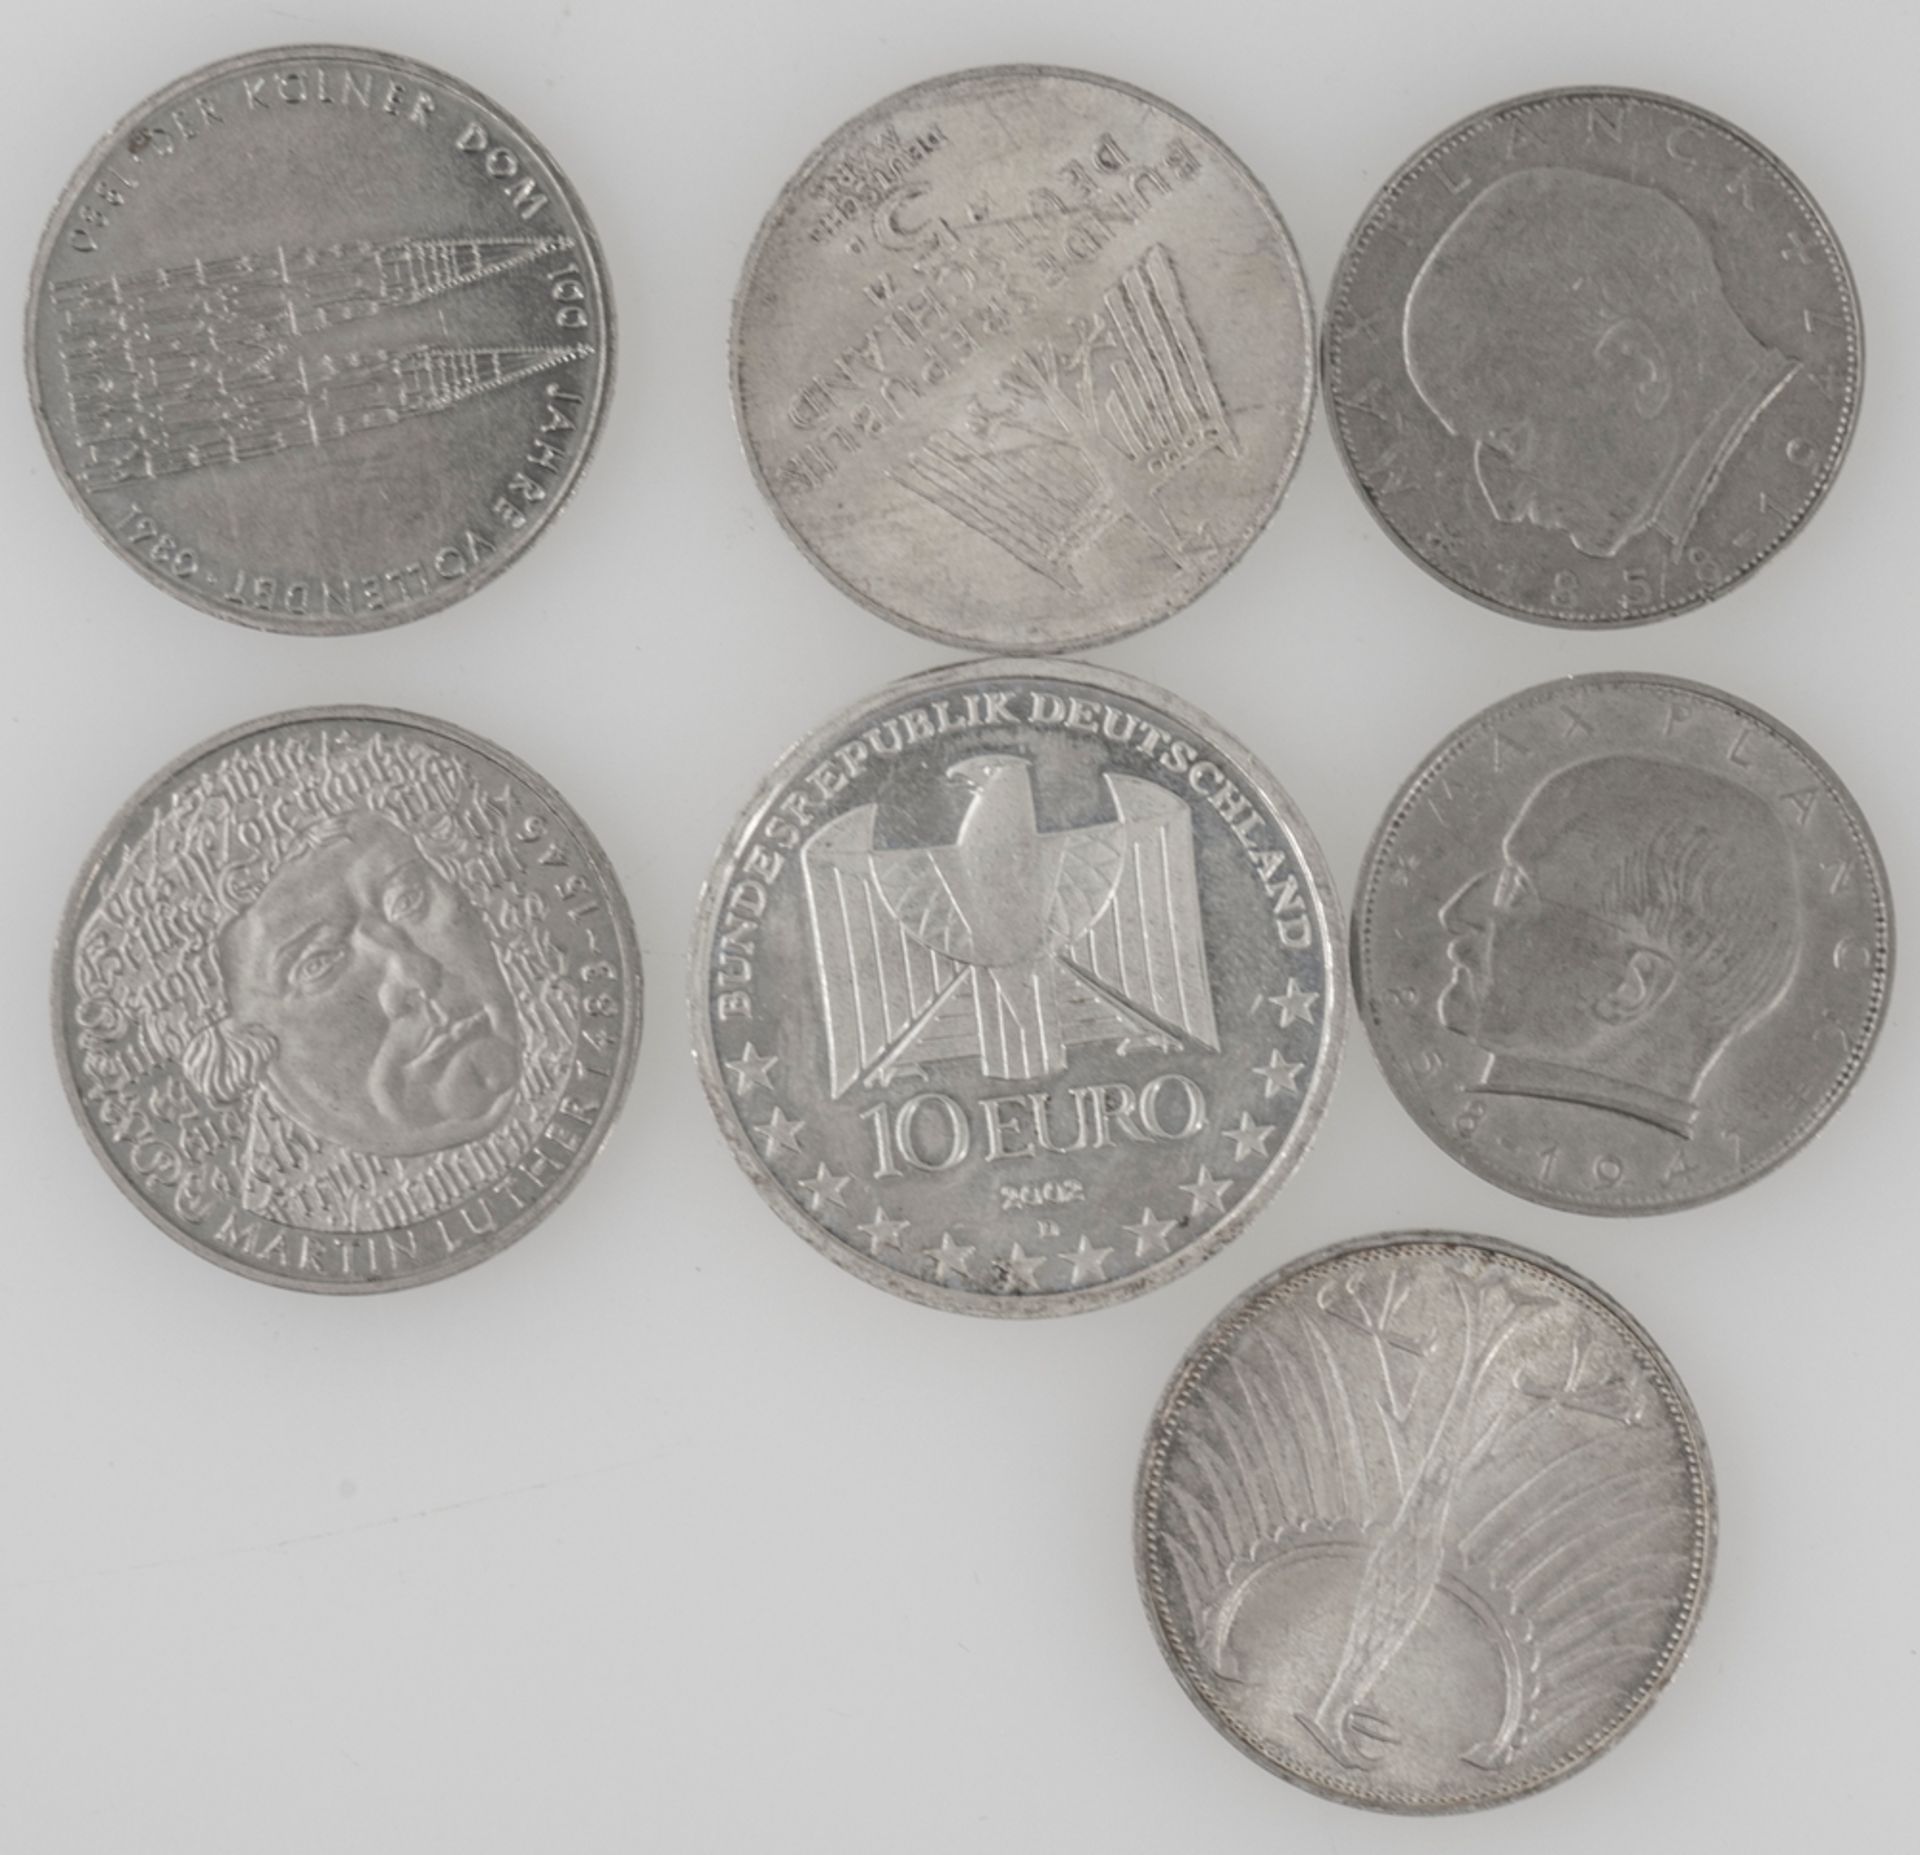 Deutschland 1947/2002, Lot Münzen. Dabei 10 Euro, 5 DM und 2 DM. Erhaltung: ss. - Bild 2 aus 2